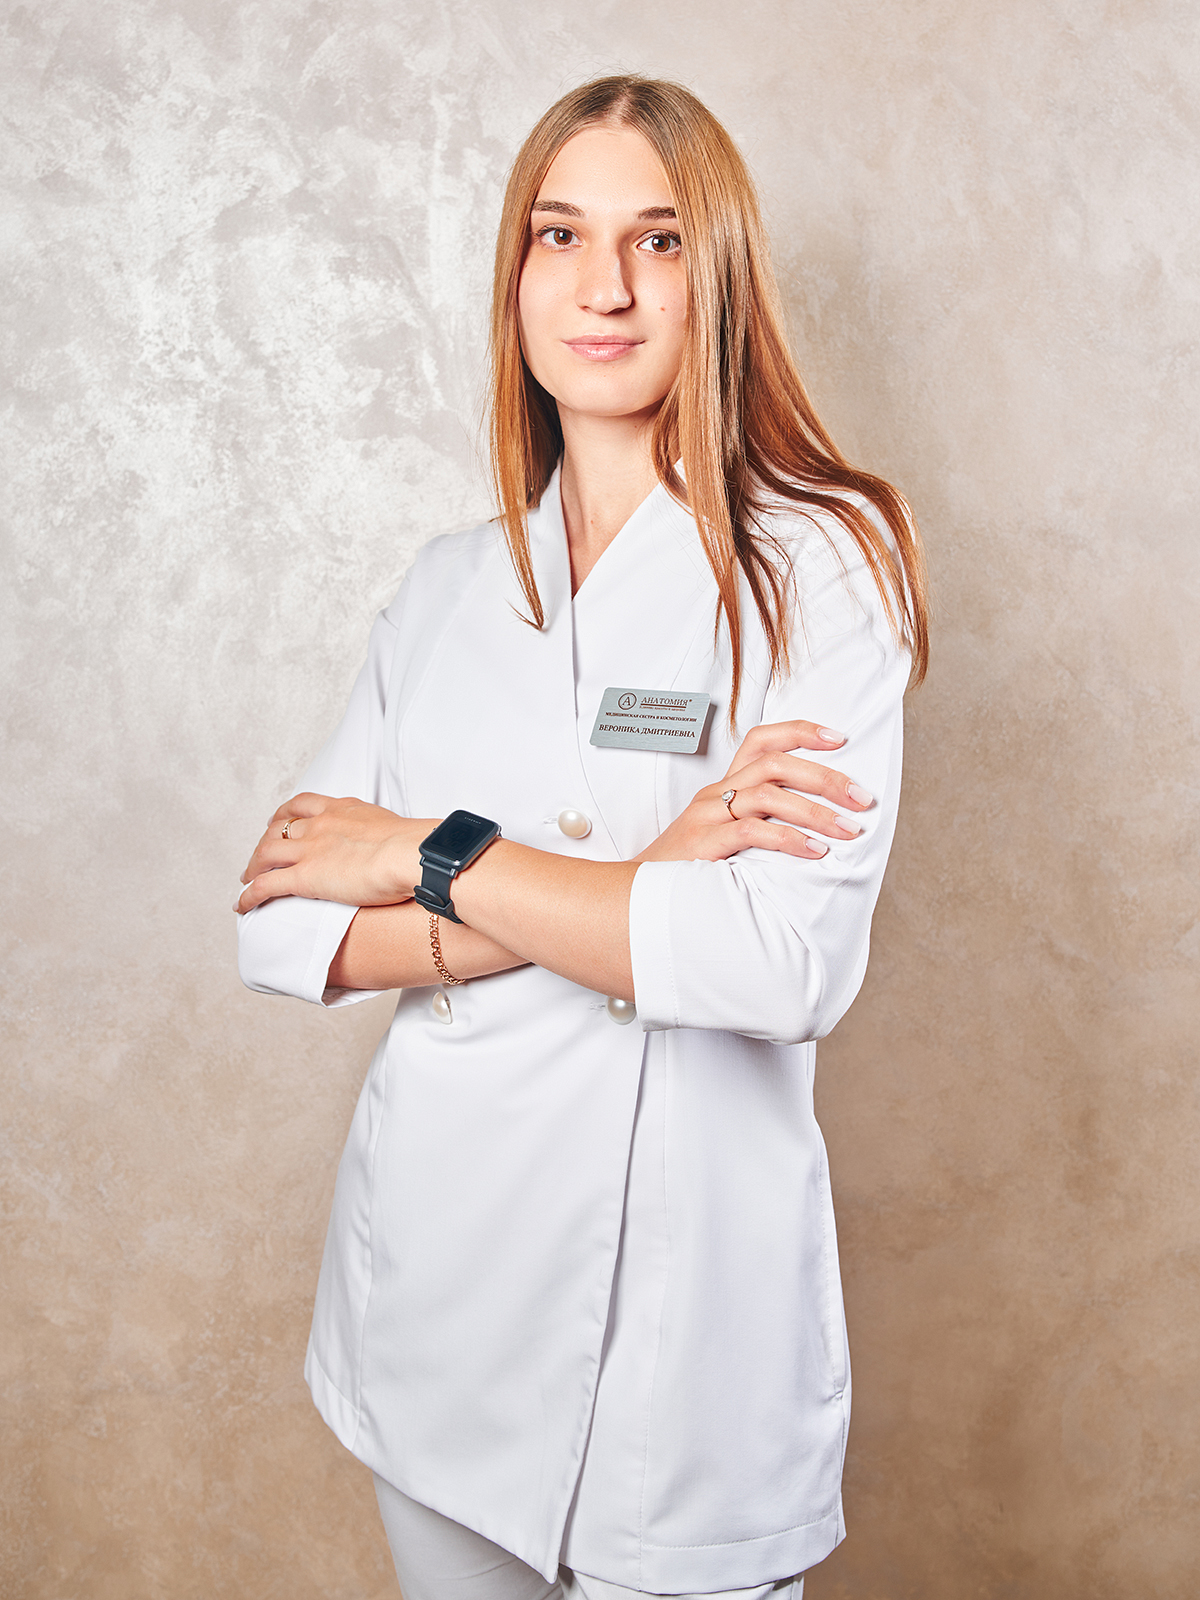 Специалист по лазерной эпиляции клиники "Анатомия" в Краснодаре, Полехина Вероника Дмитриевна